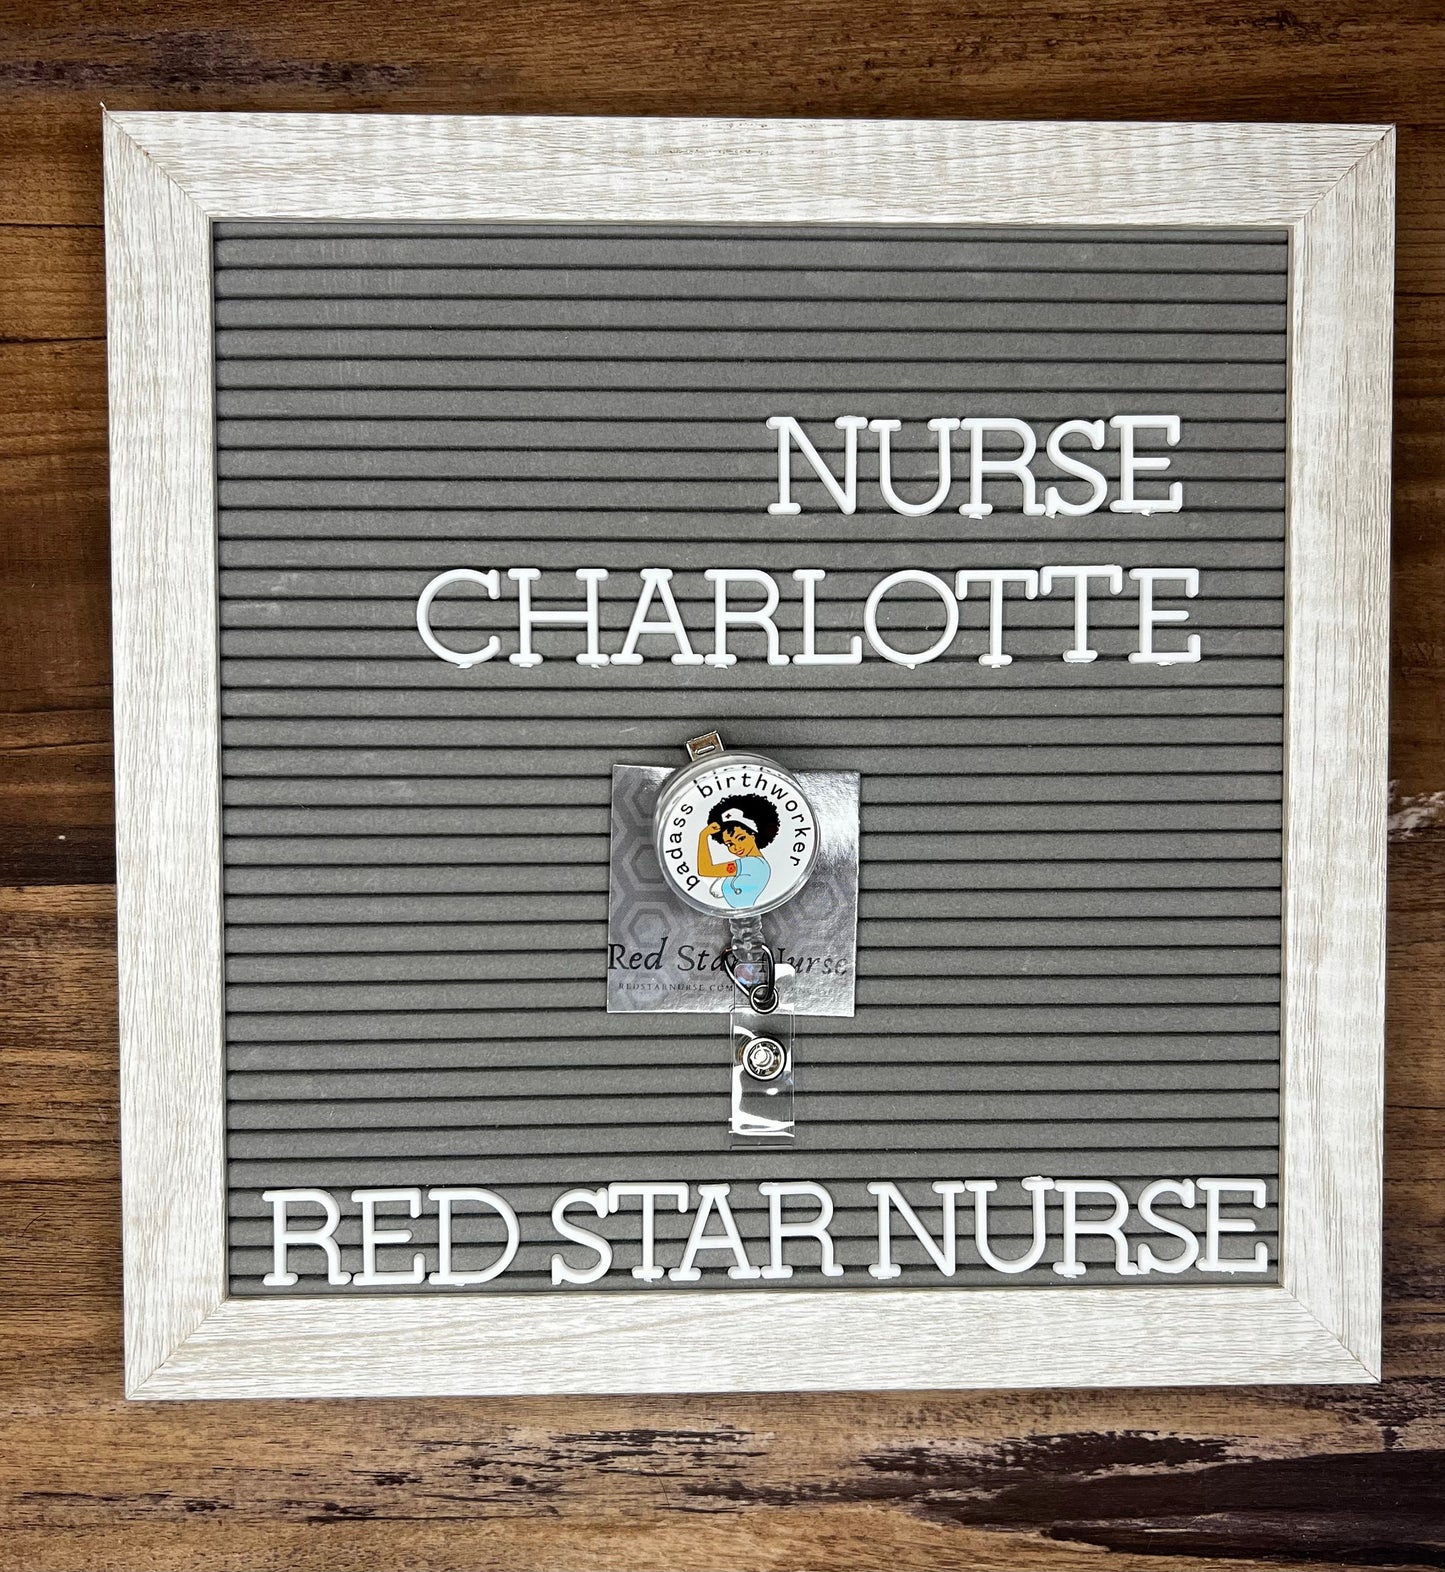 Nurse Charlotte badge reel